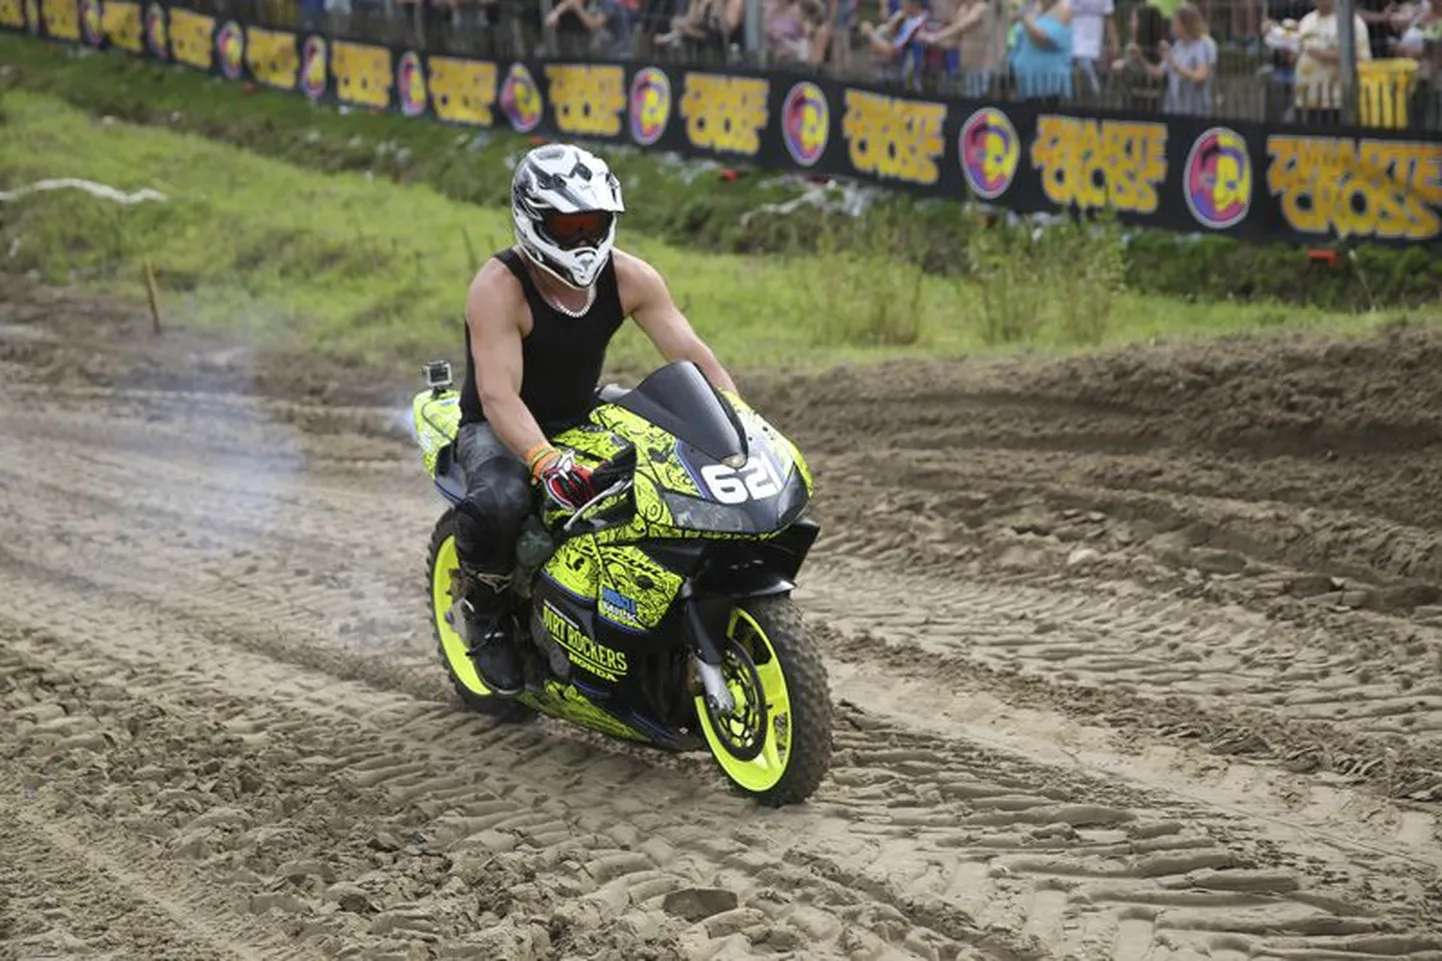 Kiviõli motofestivalil saavad tänavatsiklite omanikud oma sõiduoskused mängu panna.